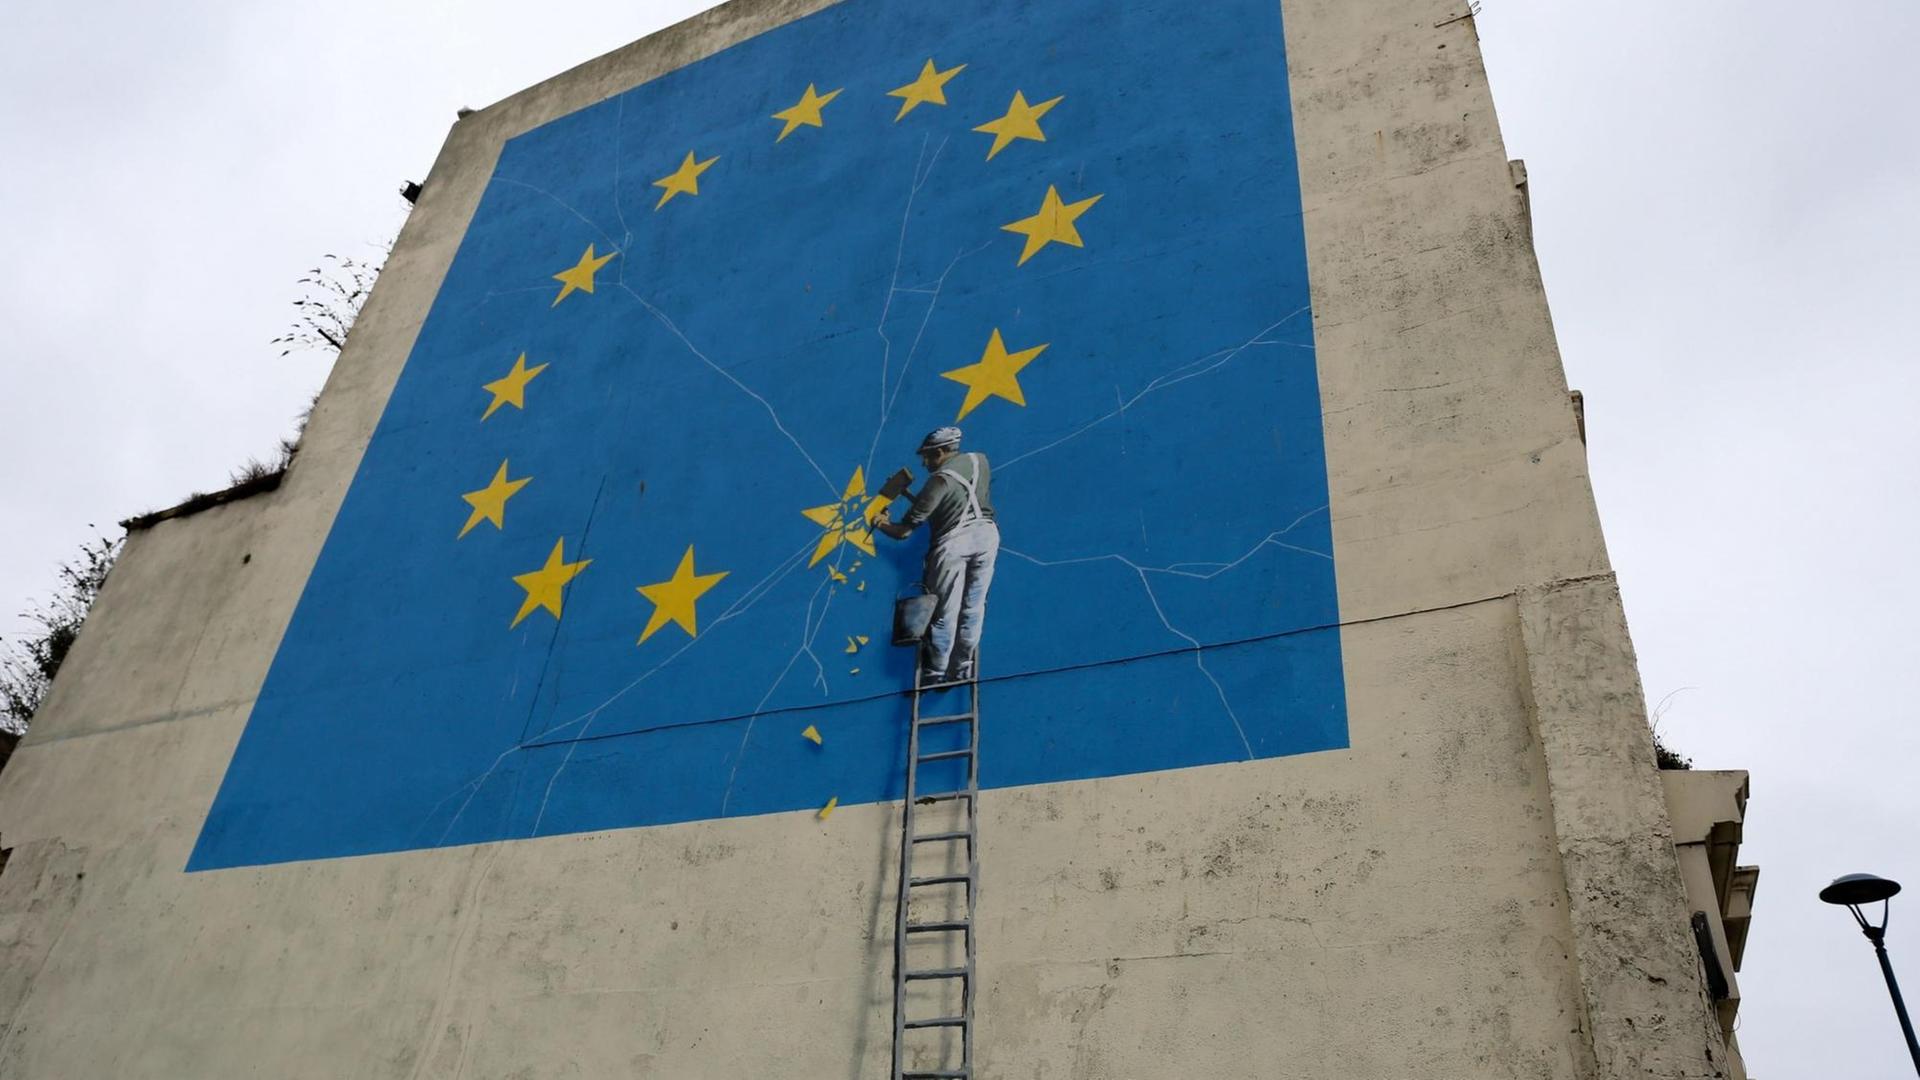 Das Foto zeigt das Wand-Bild von Banksy in der Stadt Dover. Ein Mann macht mit einem Hammer einen Stern in der Fahne von der EU kaputt.